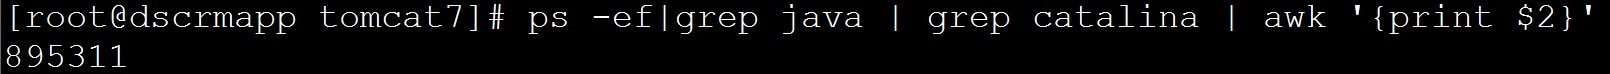 【linux】linux下准确查询正在tomcat下运行的java进程。准确获取正在运行的java进程的PID第2张